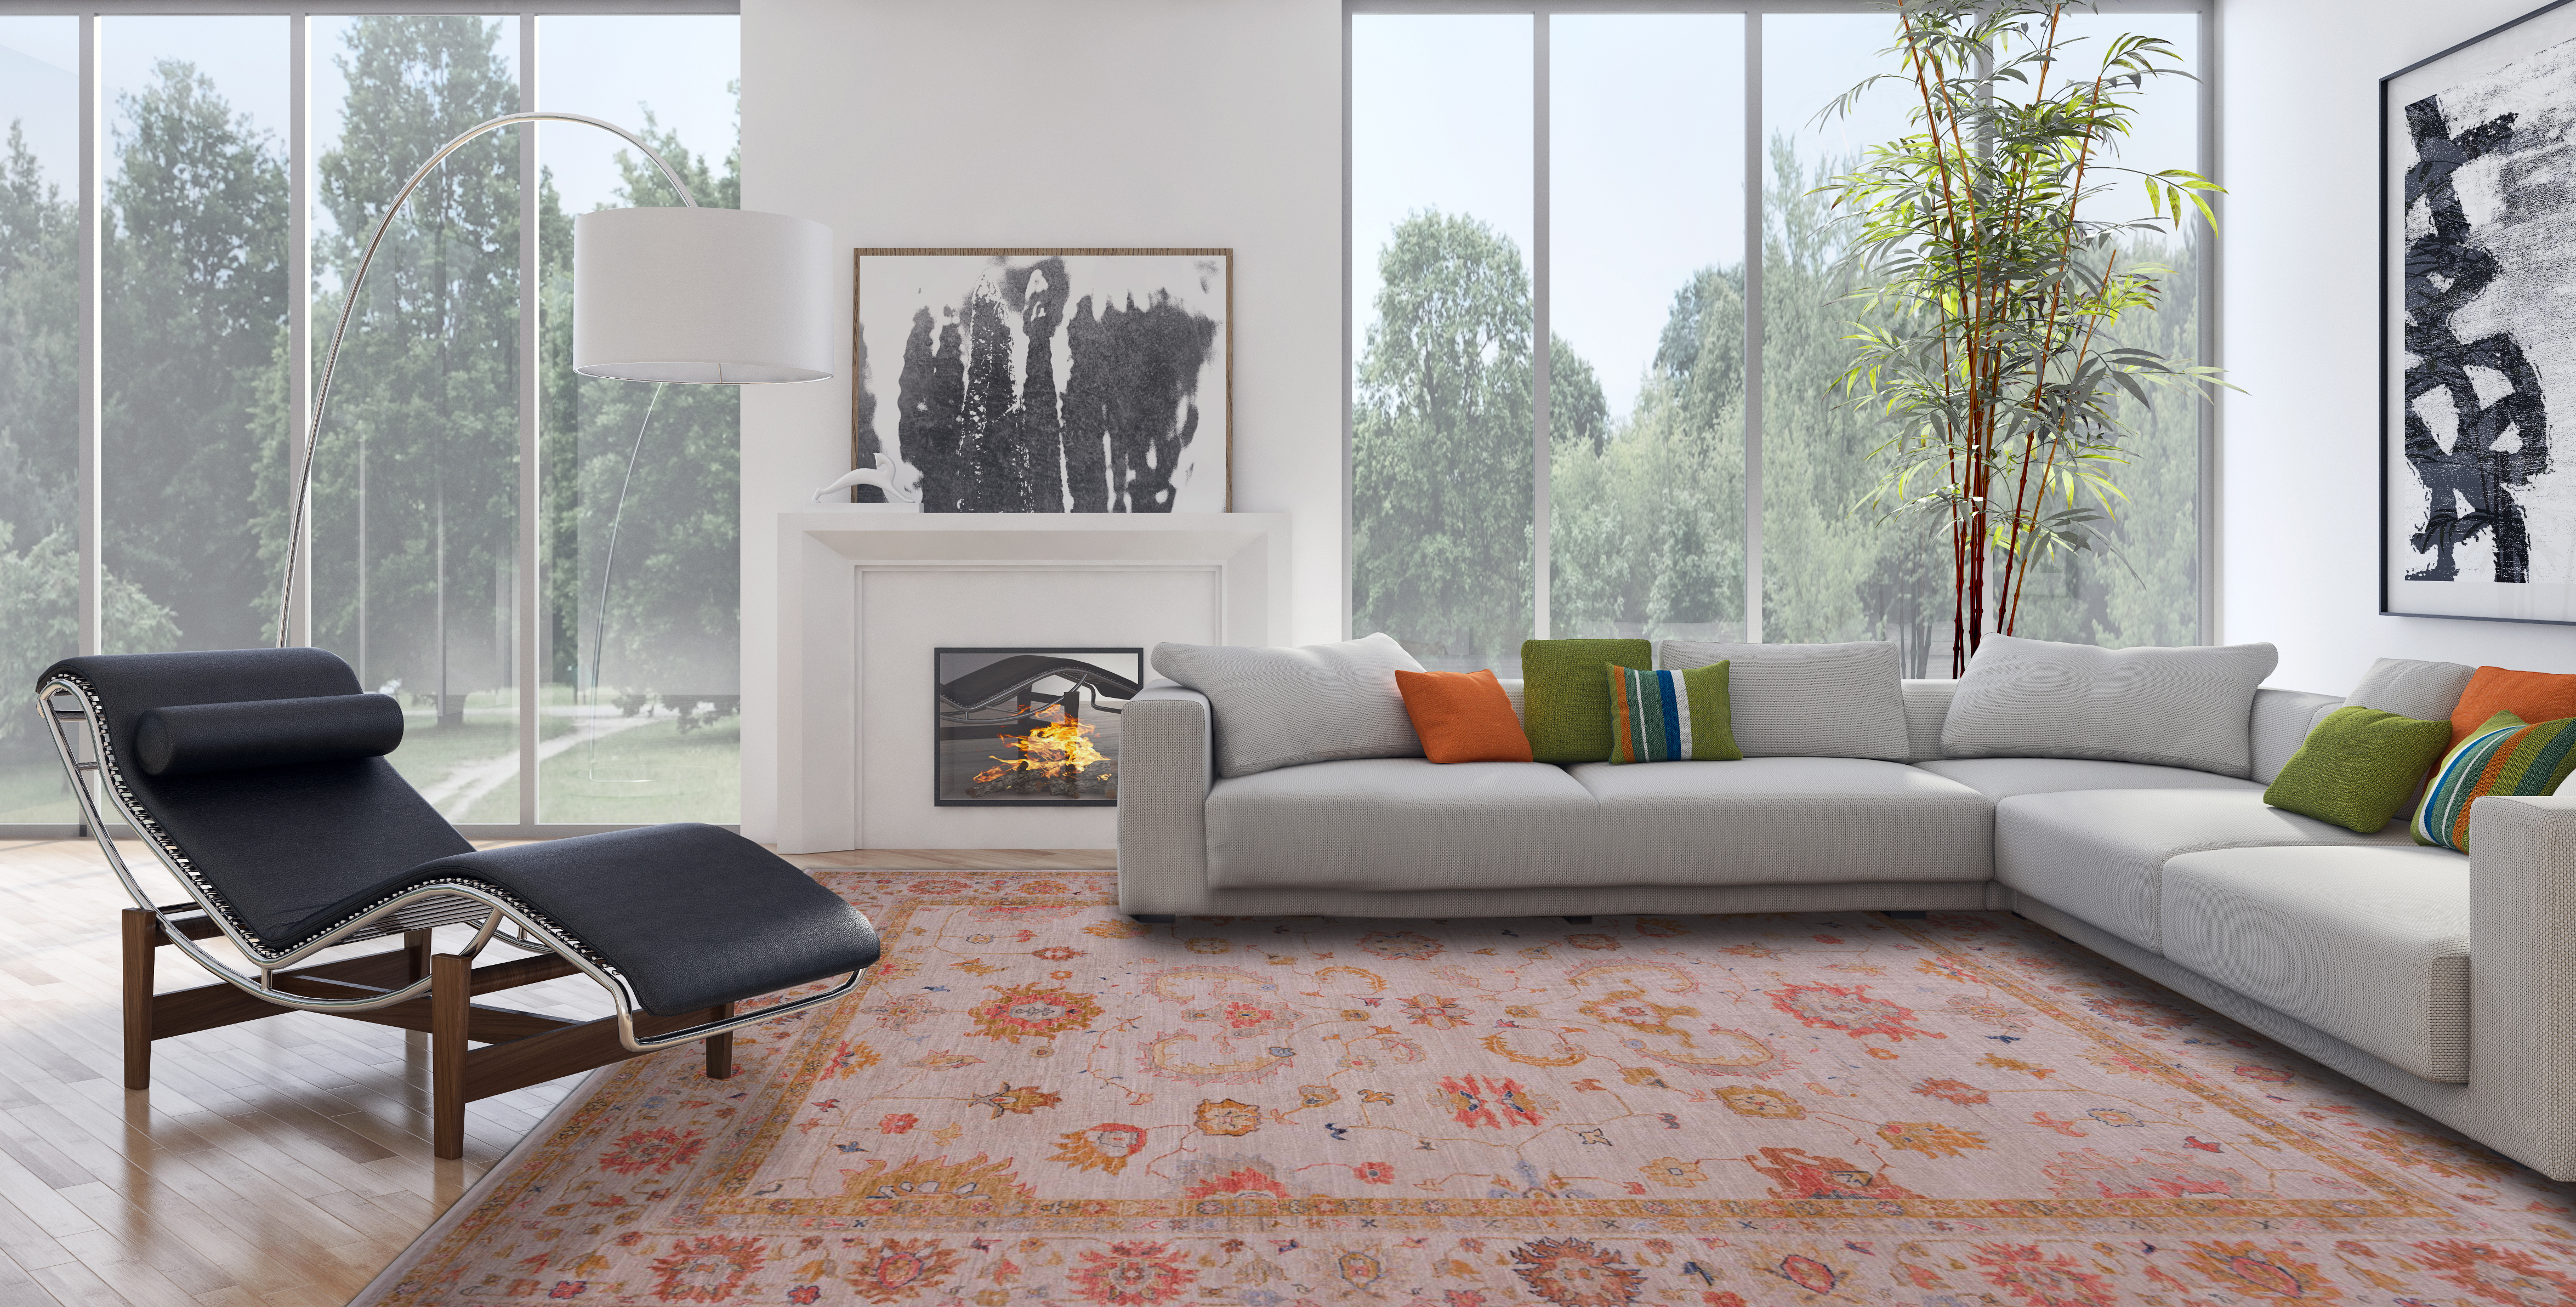 Angora oushak rug in living room